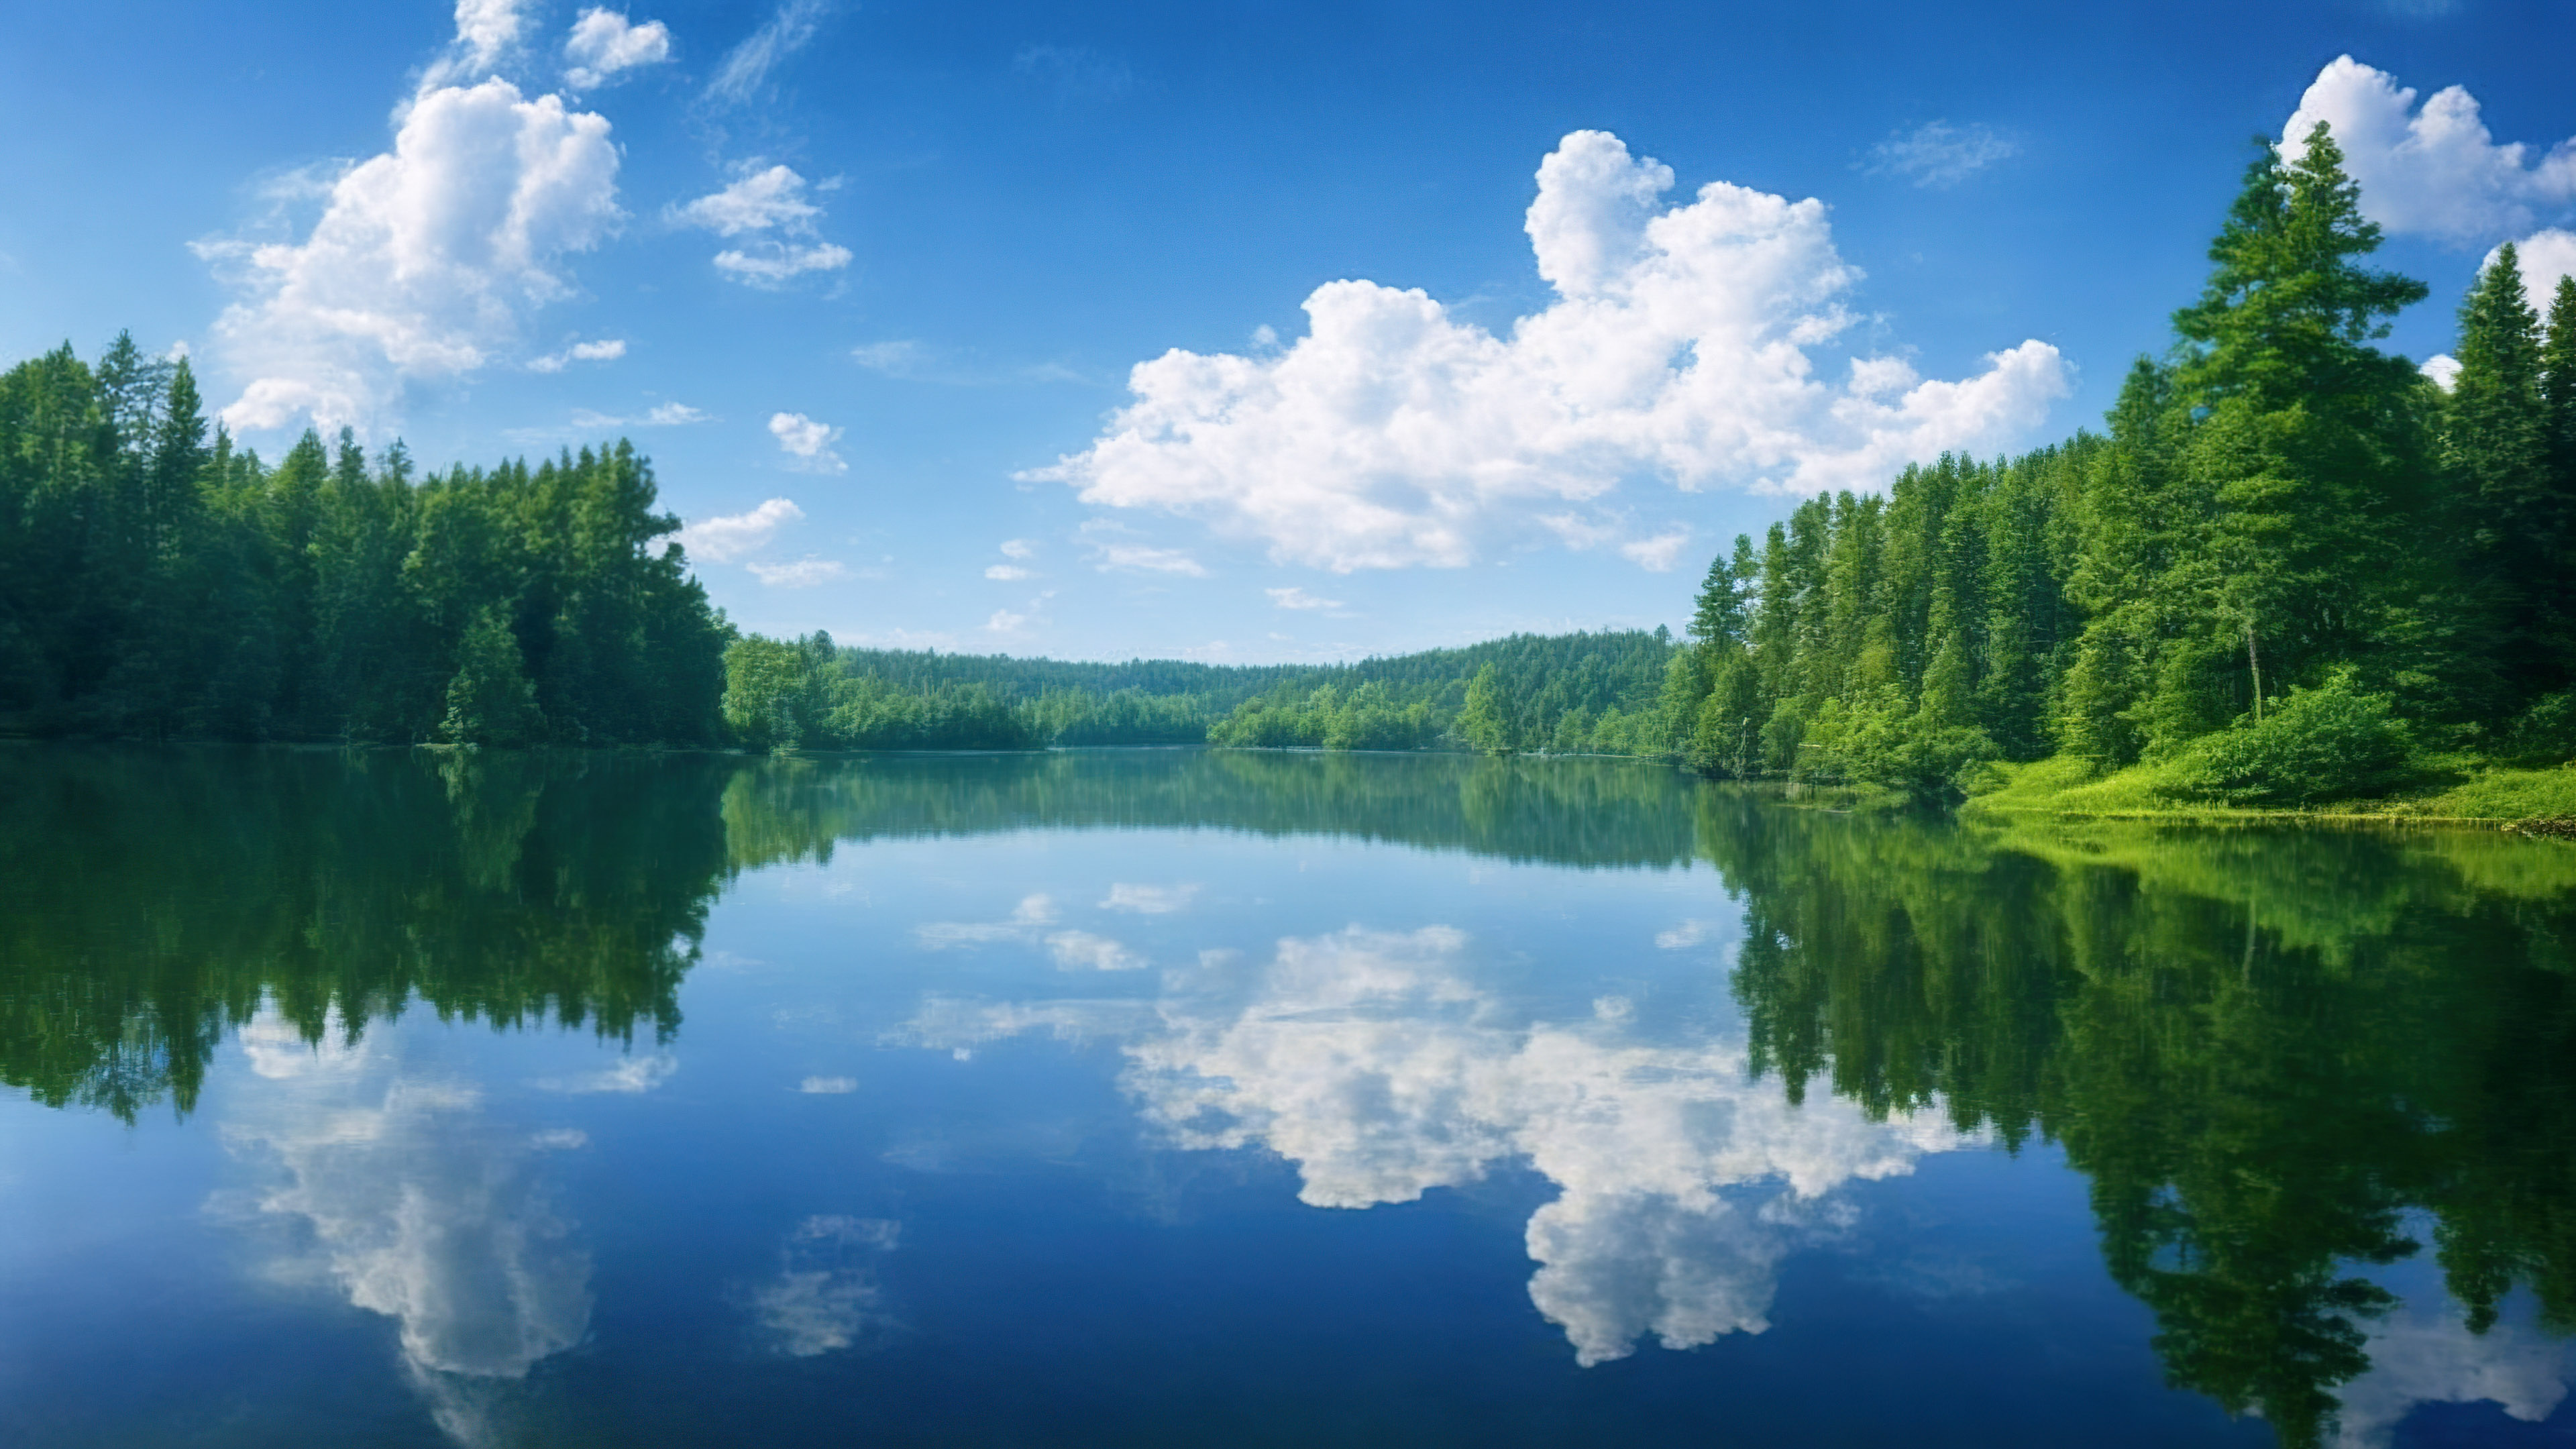 Capturez la sérénité d'un lac serein reflétant un ciel parsemé de nuages, entouré de forêts verdoyantes avec notre fond d'écran 4K d'arbre de beaux paysages. 